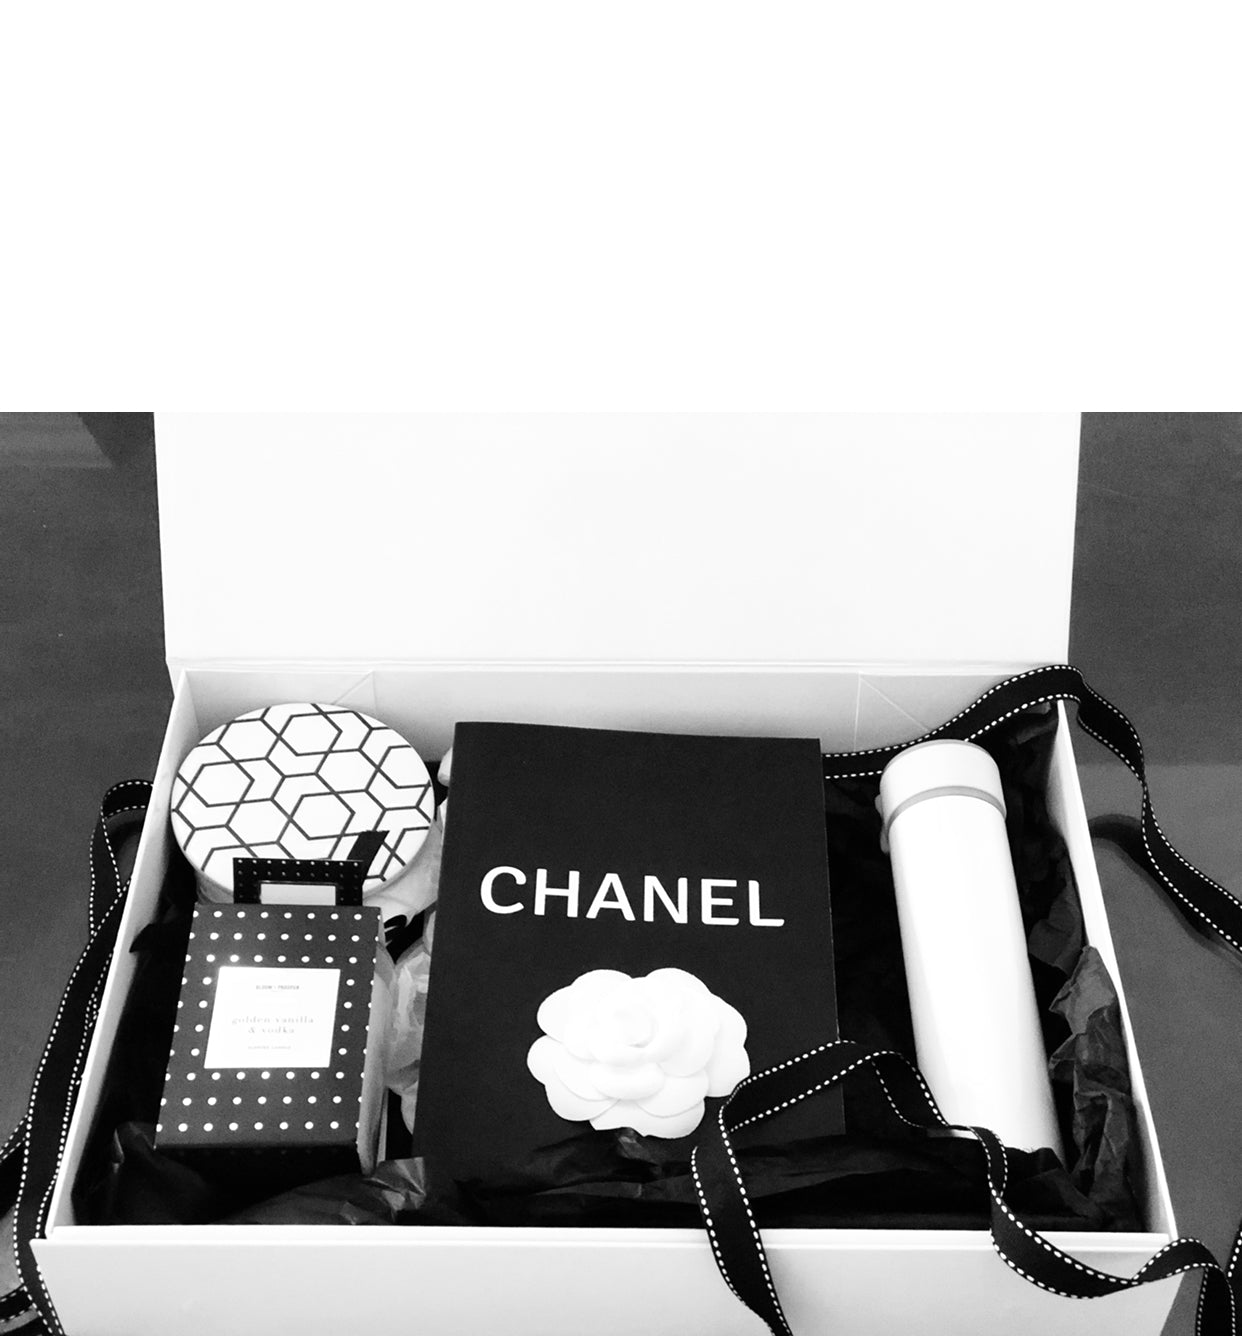 Official chanel water paris edinburgh 50ml venice biarritz fragrance 125 gift  box Valentines Day Gift Set Trang điểm chăm sóc da và làm đẹp Nước hoa   Lazadavn